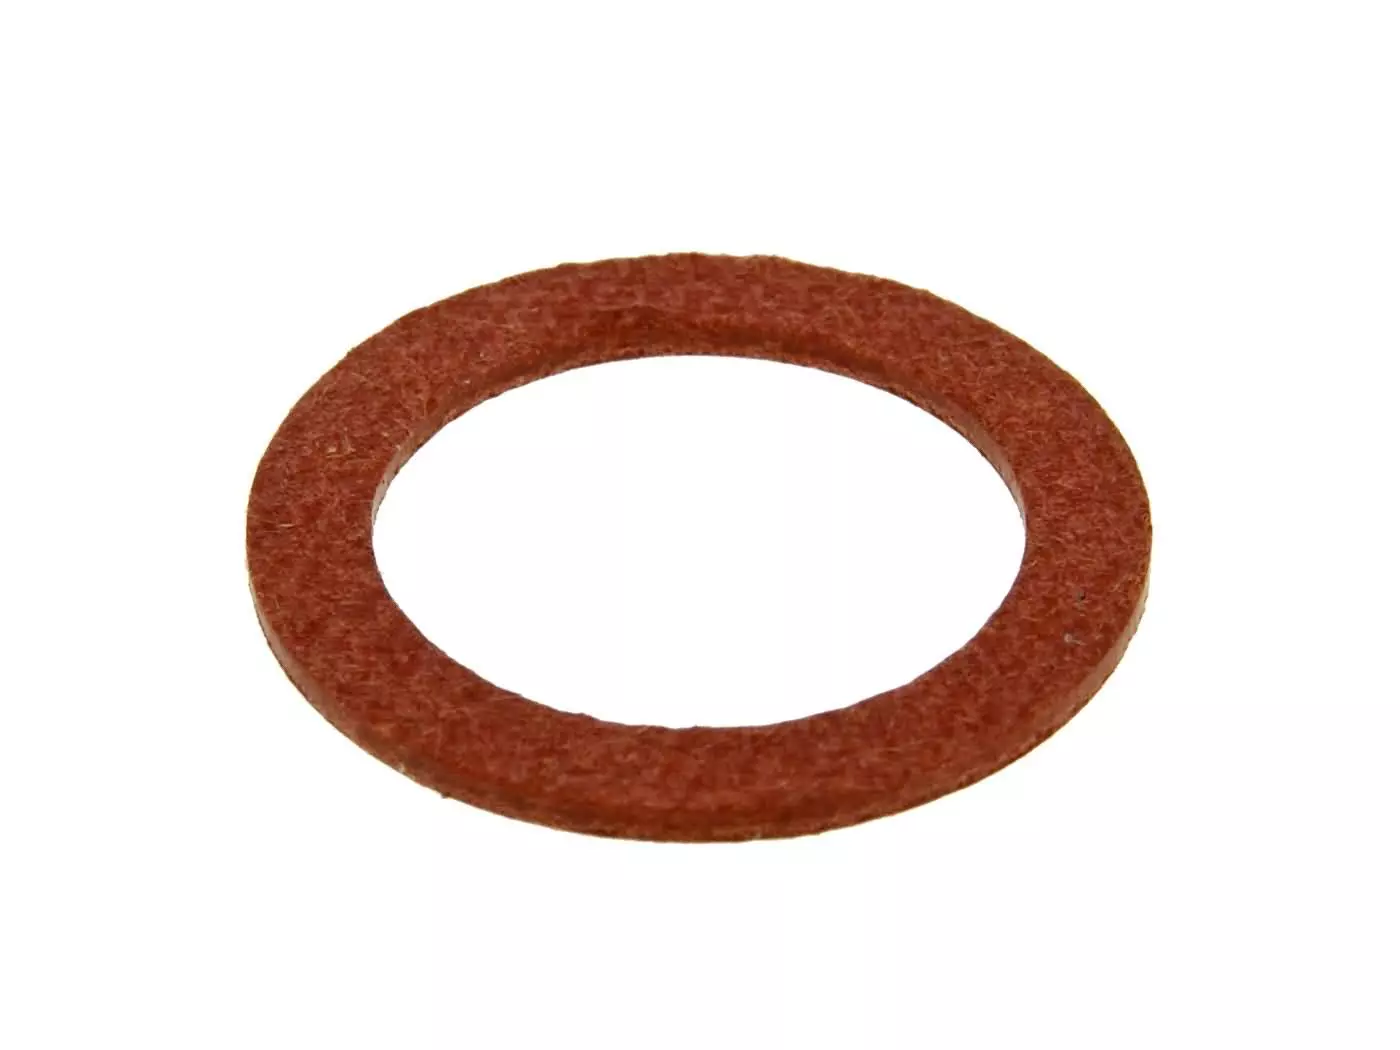 Fiber Seal Ring Naraku 14x20x1mm